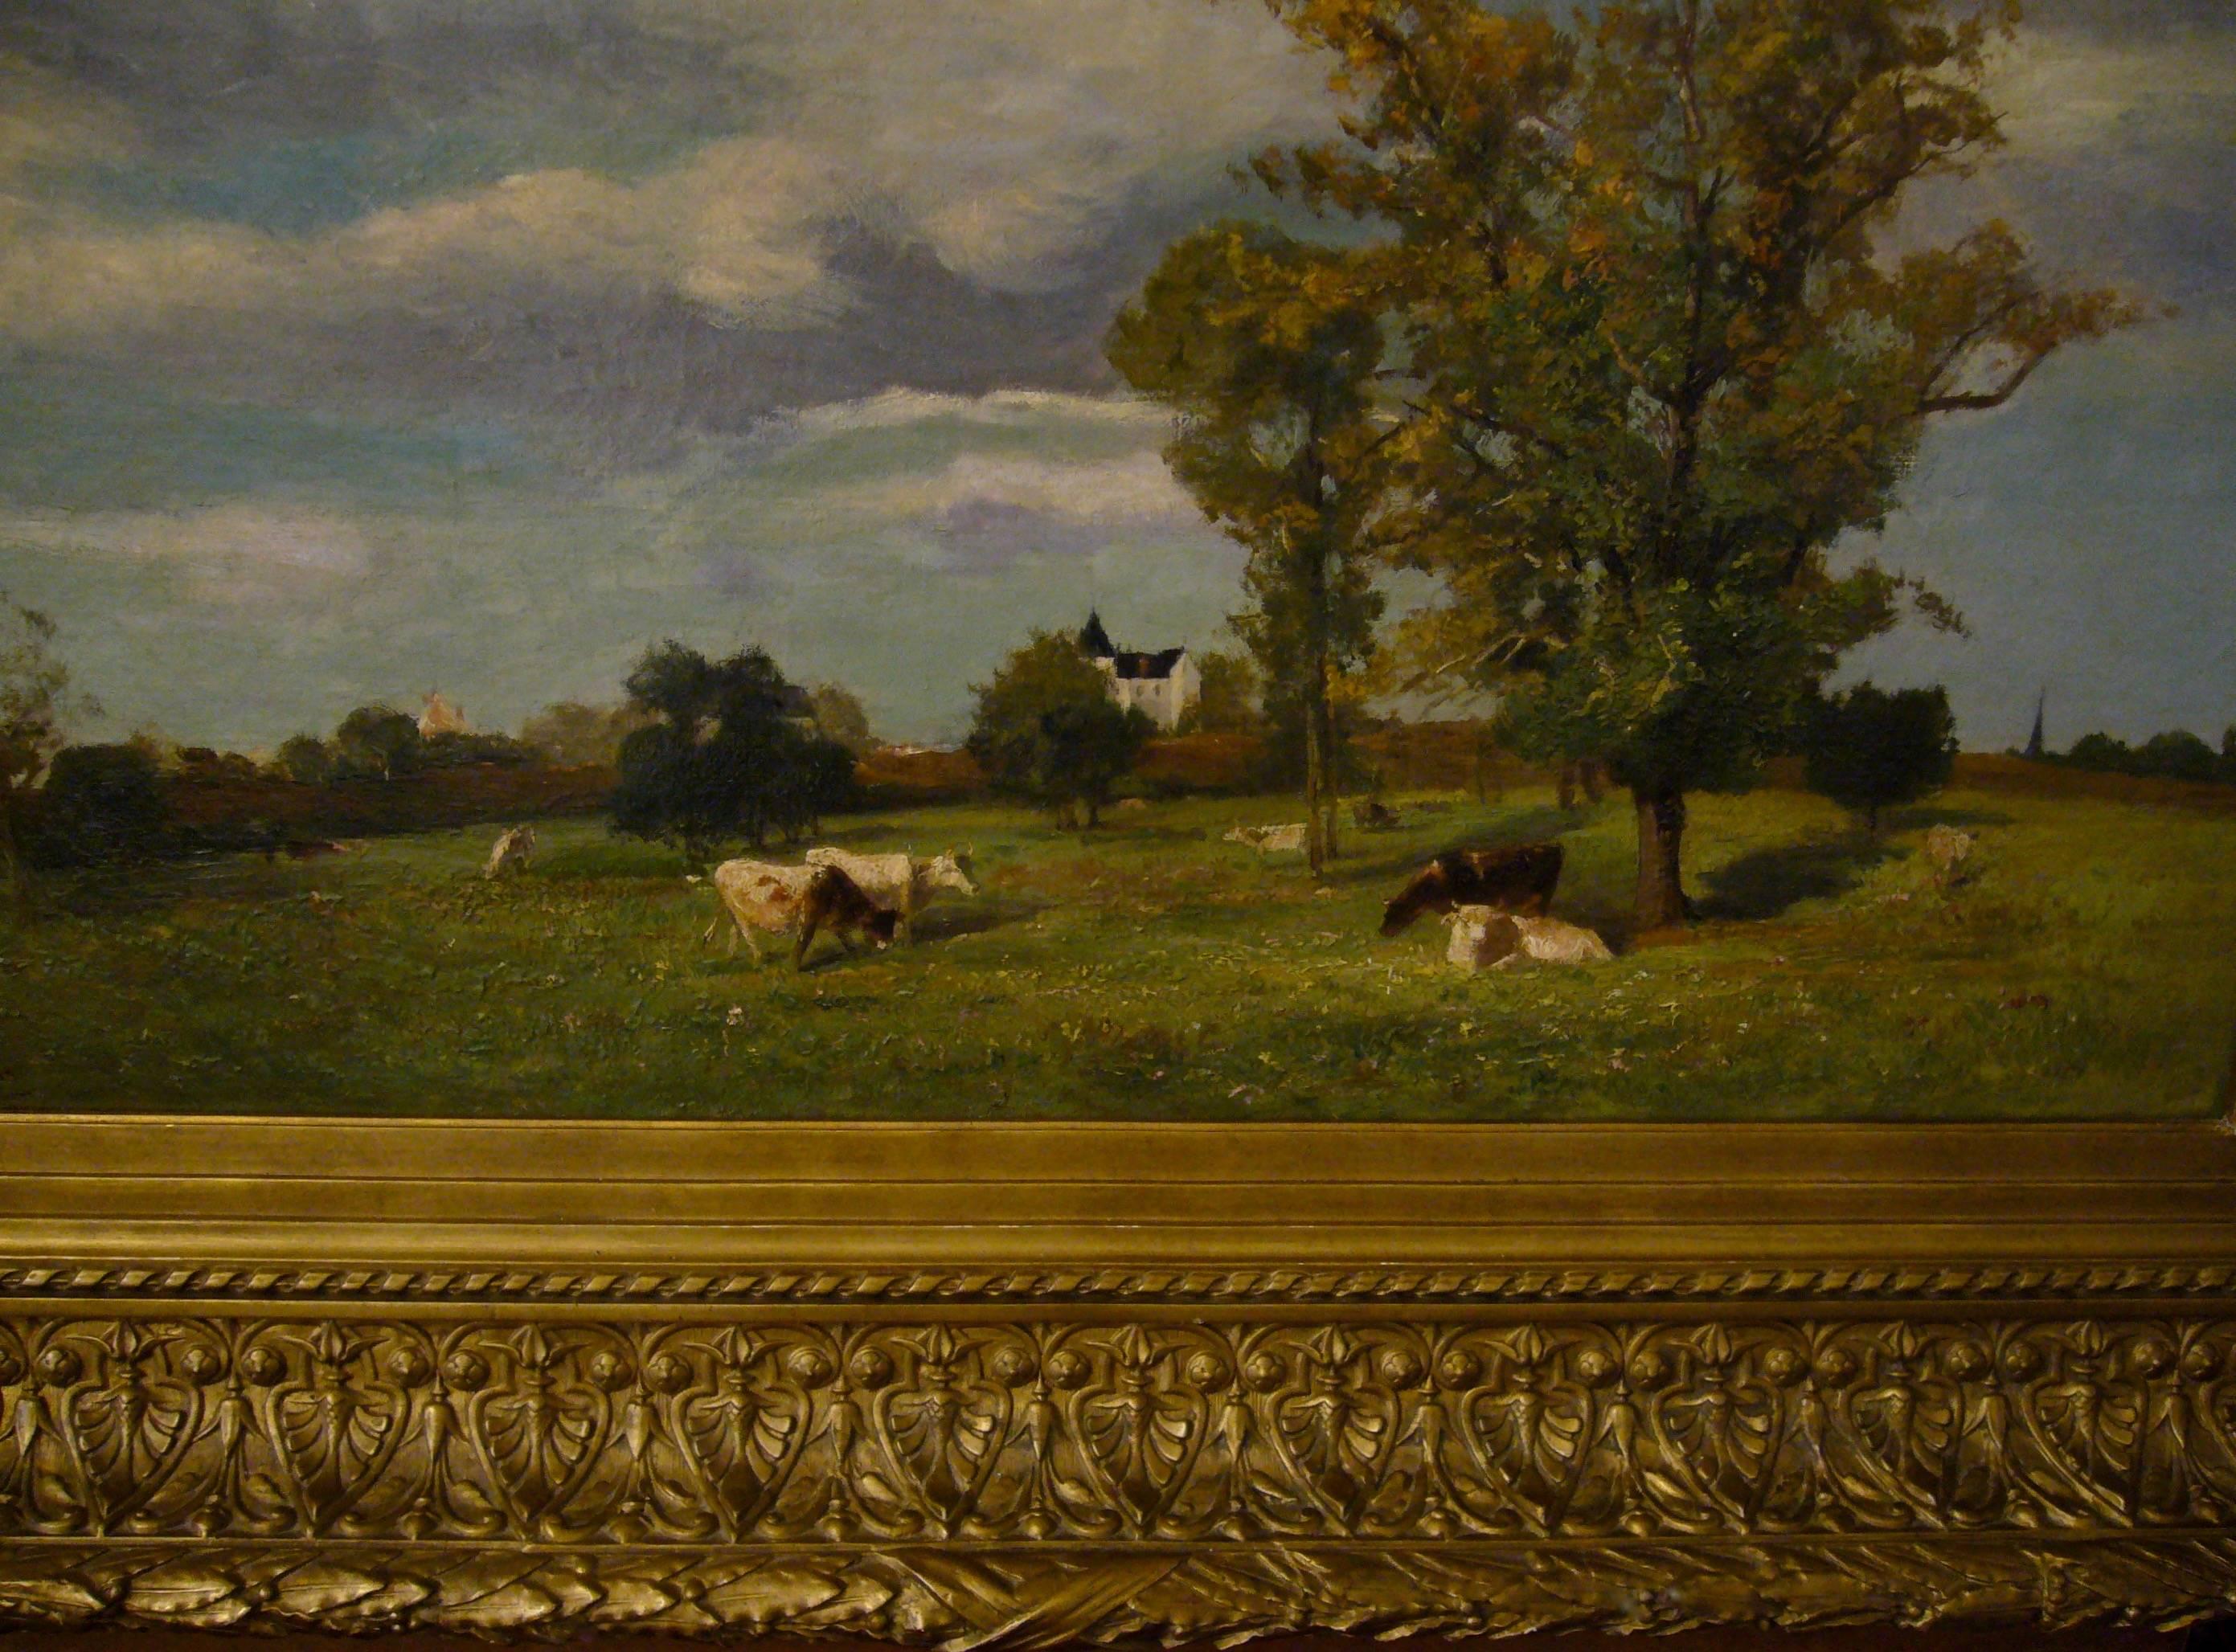 Vaches dans un paysage de printemps près d'un chateau - 19th Century Landscape  - Barbizon School Painting by Jacques Alfred Brielman